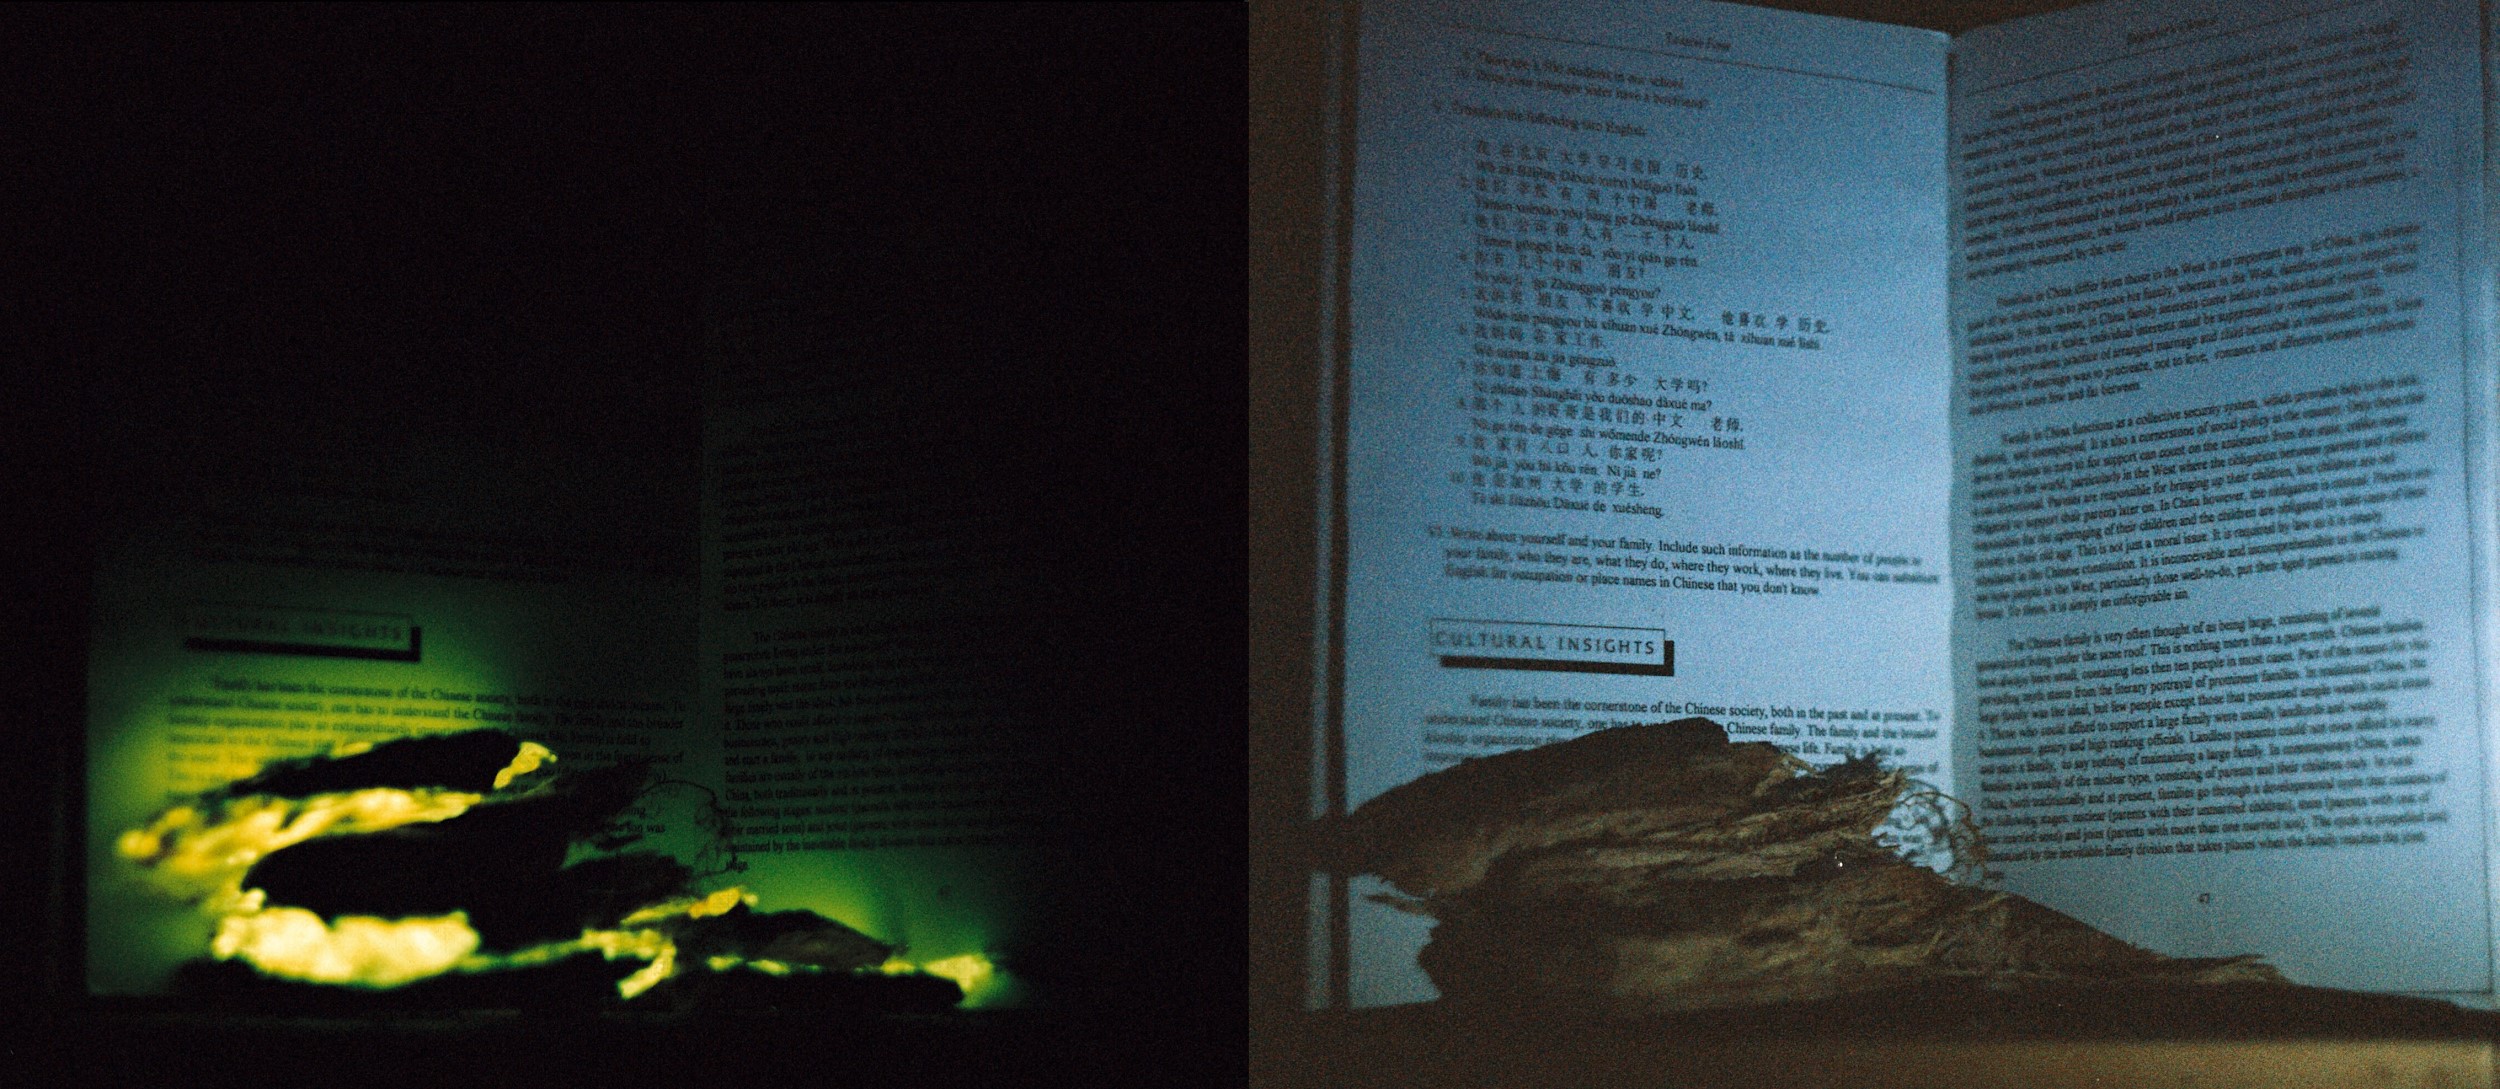 Fotod: Raamatu ette asetatud helendavad kõdupuidu tükid - nende valgusest jääb lugemiseks ikkagi natuke väheks, kuid mõne suurema sõna loeb ehk ära. Valgustatuna taskulambiga (paremal) ja pimedas (vasakul) - säriaeg ~3h.